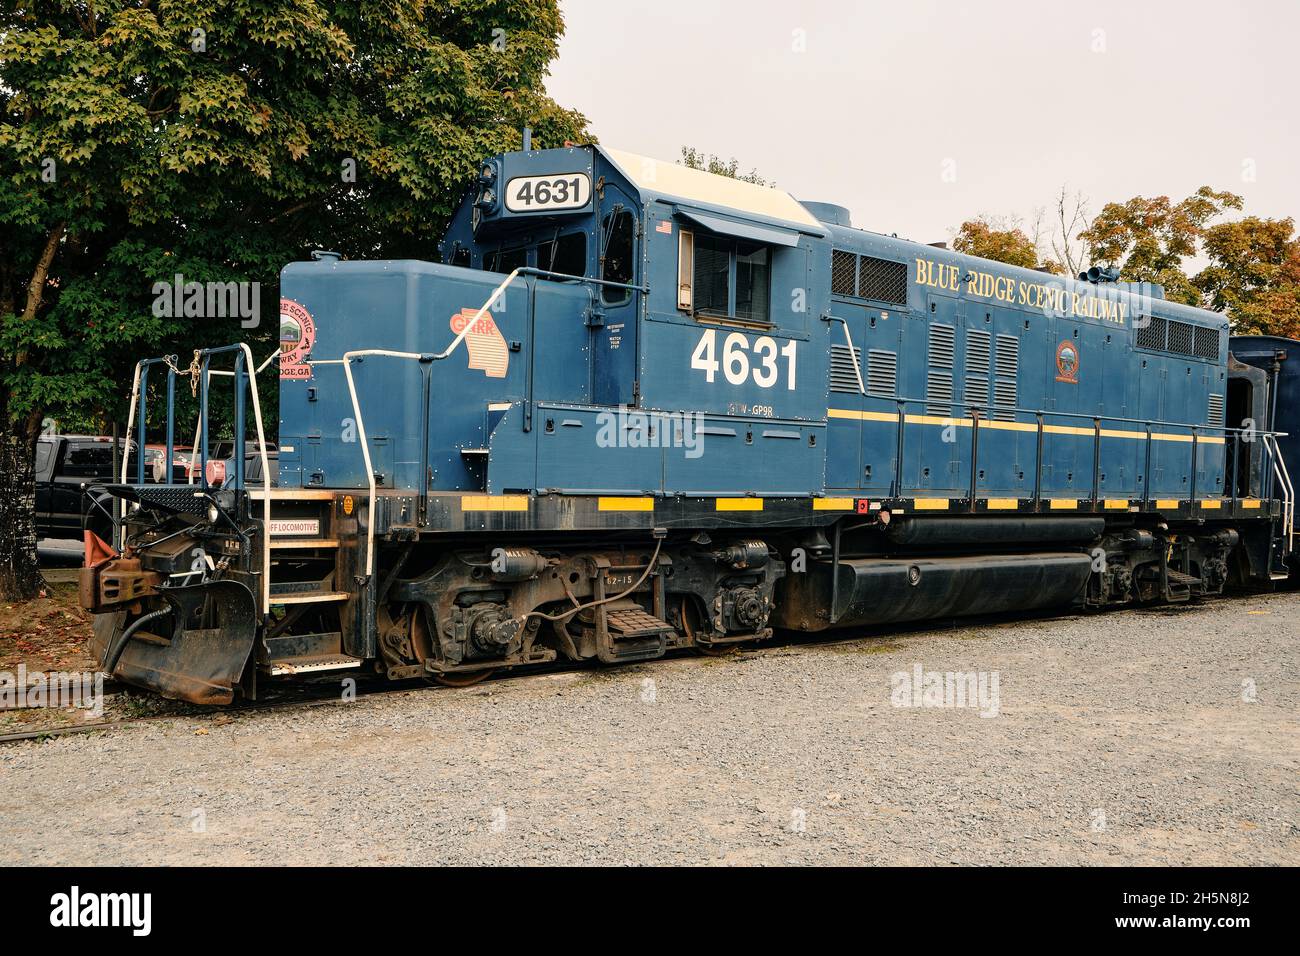 Blue Ridge Scenic Railway GP9R, locomotiva diesel, un treno storico, seduto e inattivo alla stazione ferroviaria in Blue Ridge Georgia, USA. Foto Stock